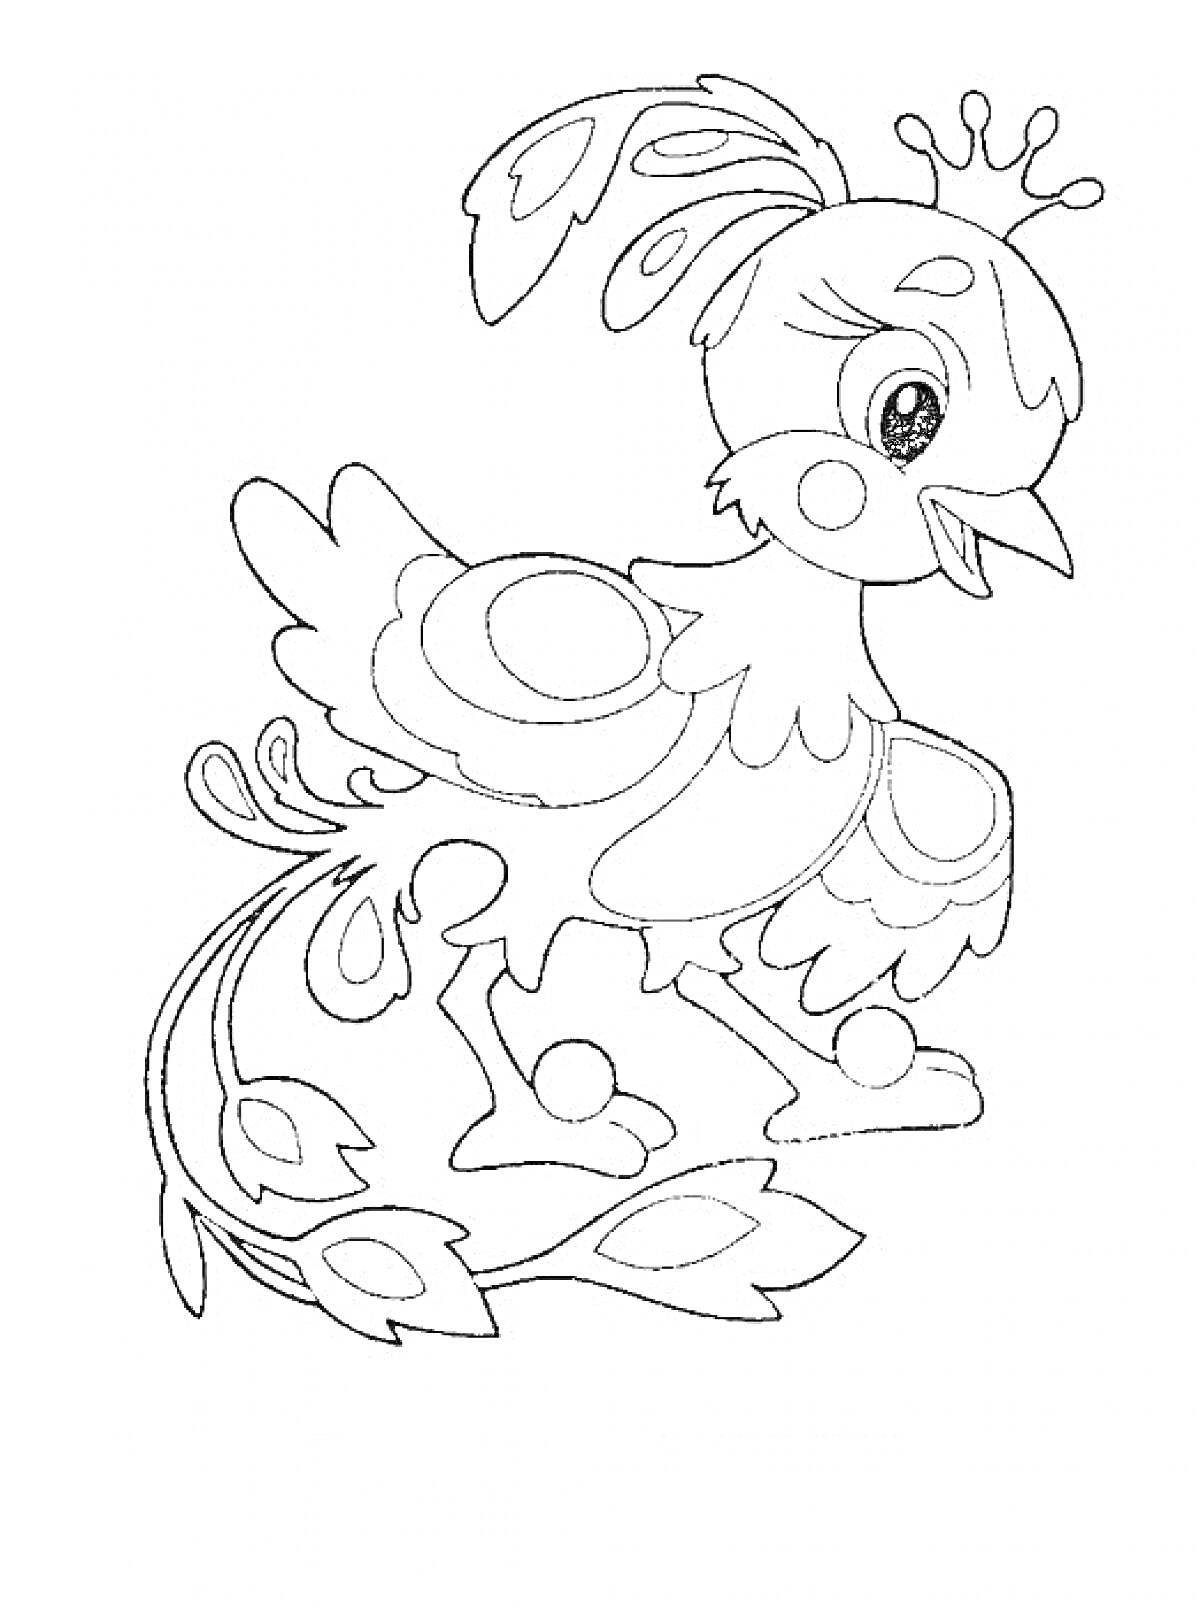 Раскраска Жар Птица с короной, перьями на голове, крыльями и декоративным хвостом